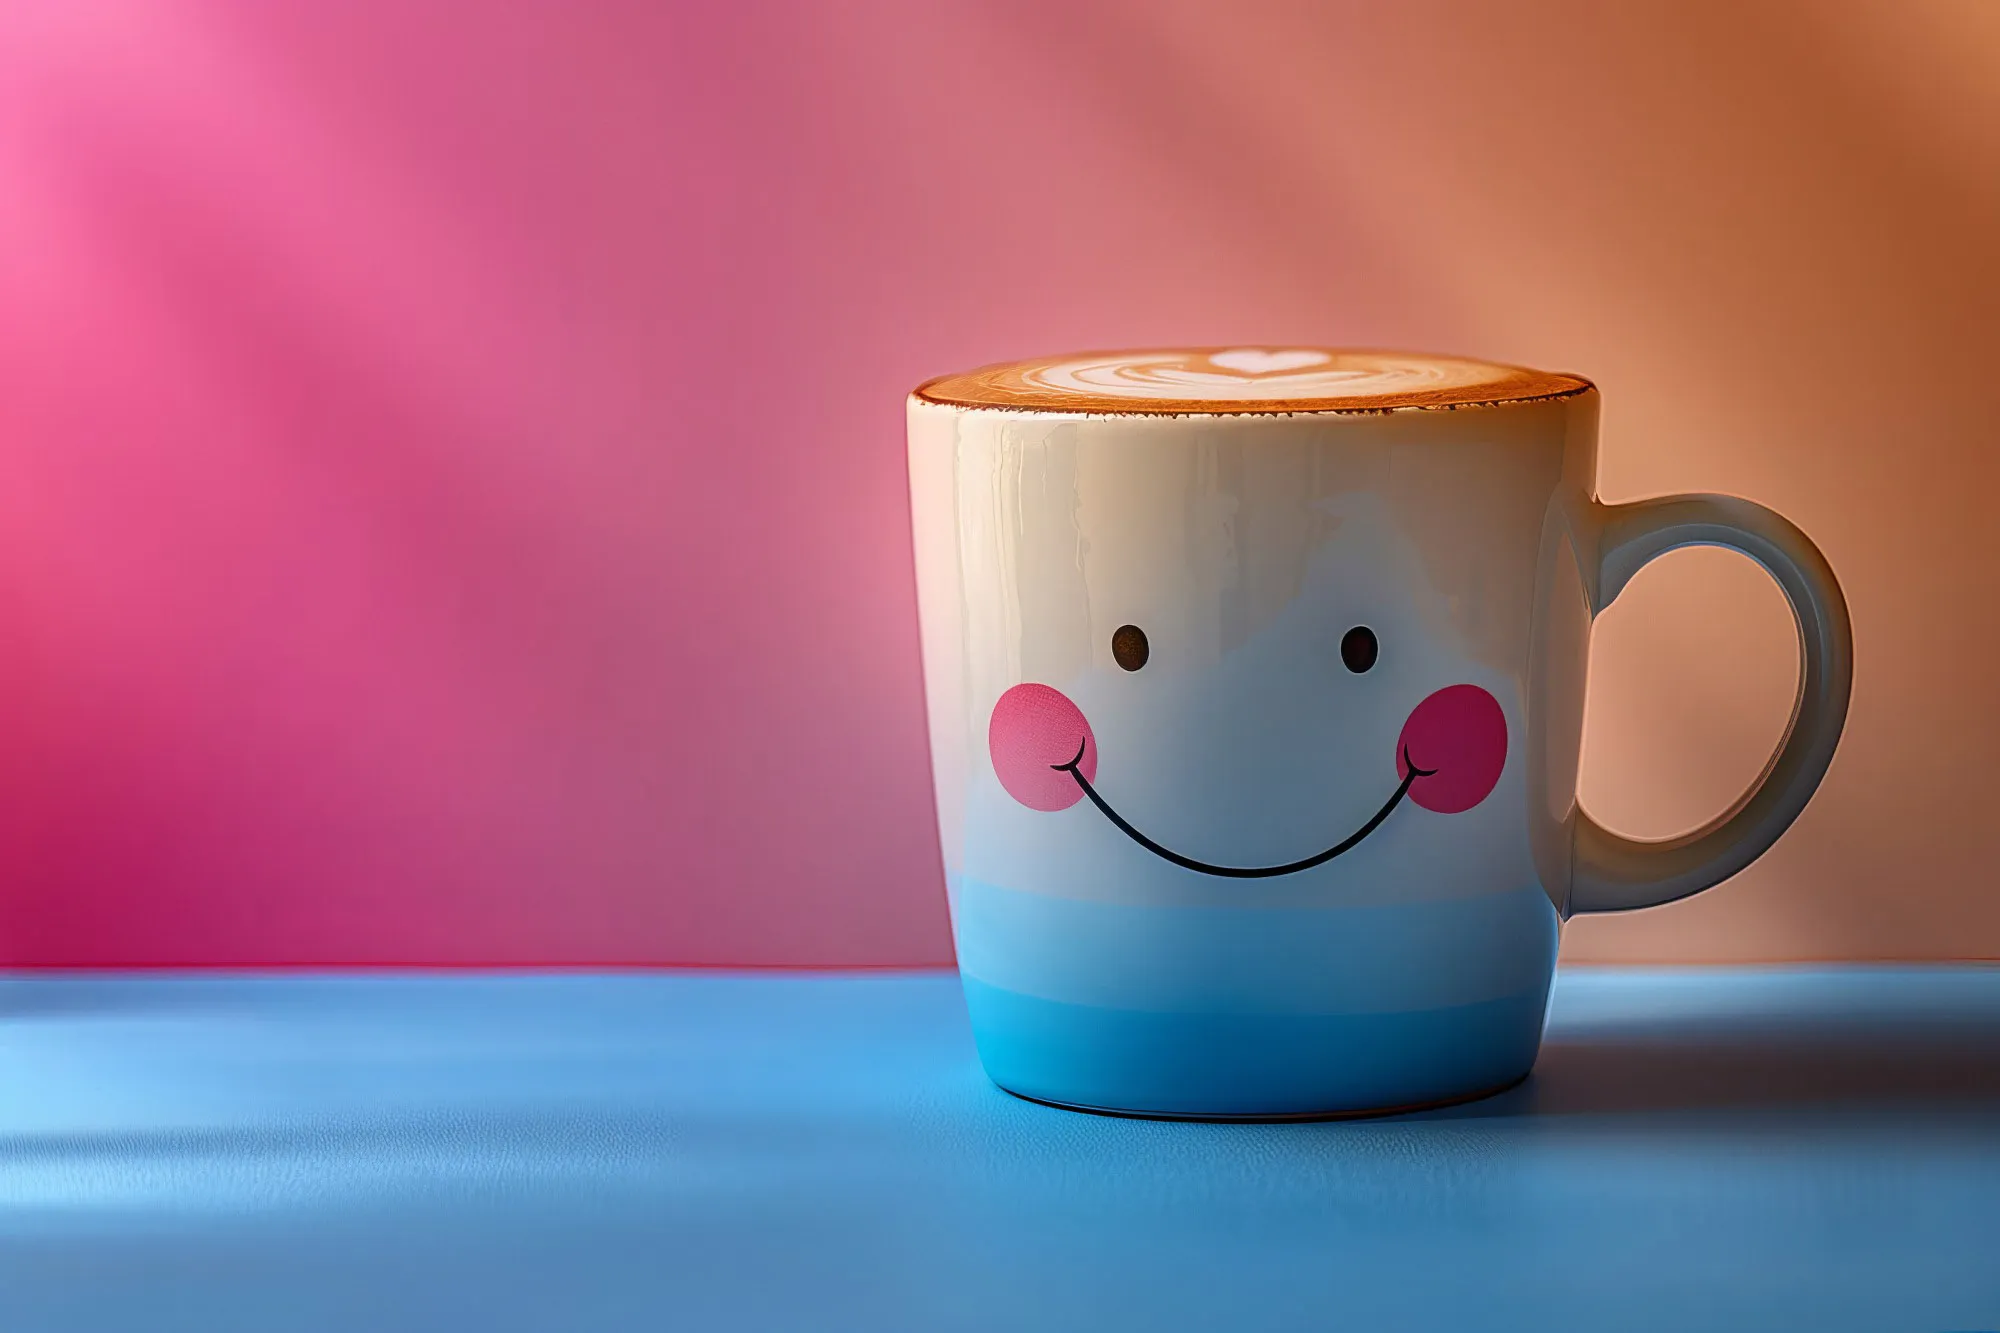 Saludo de buenos días con una taza de café